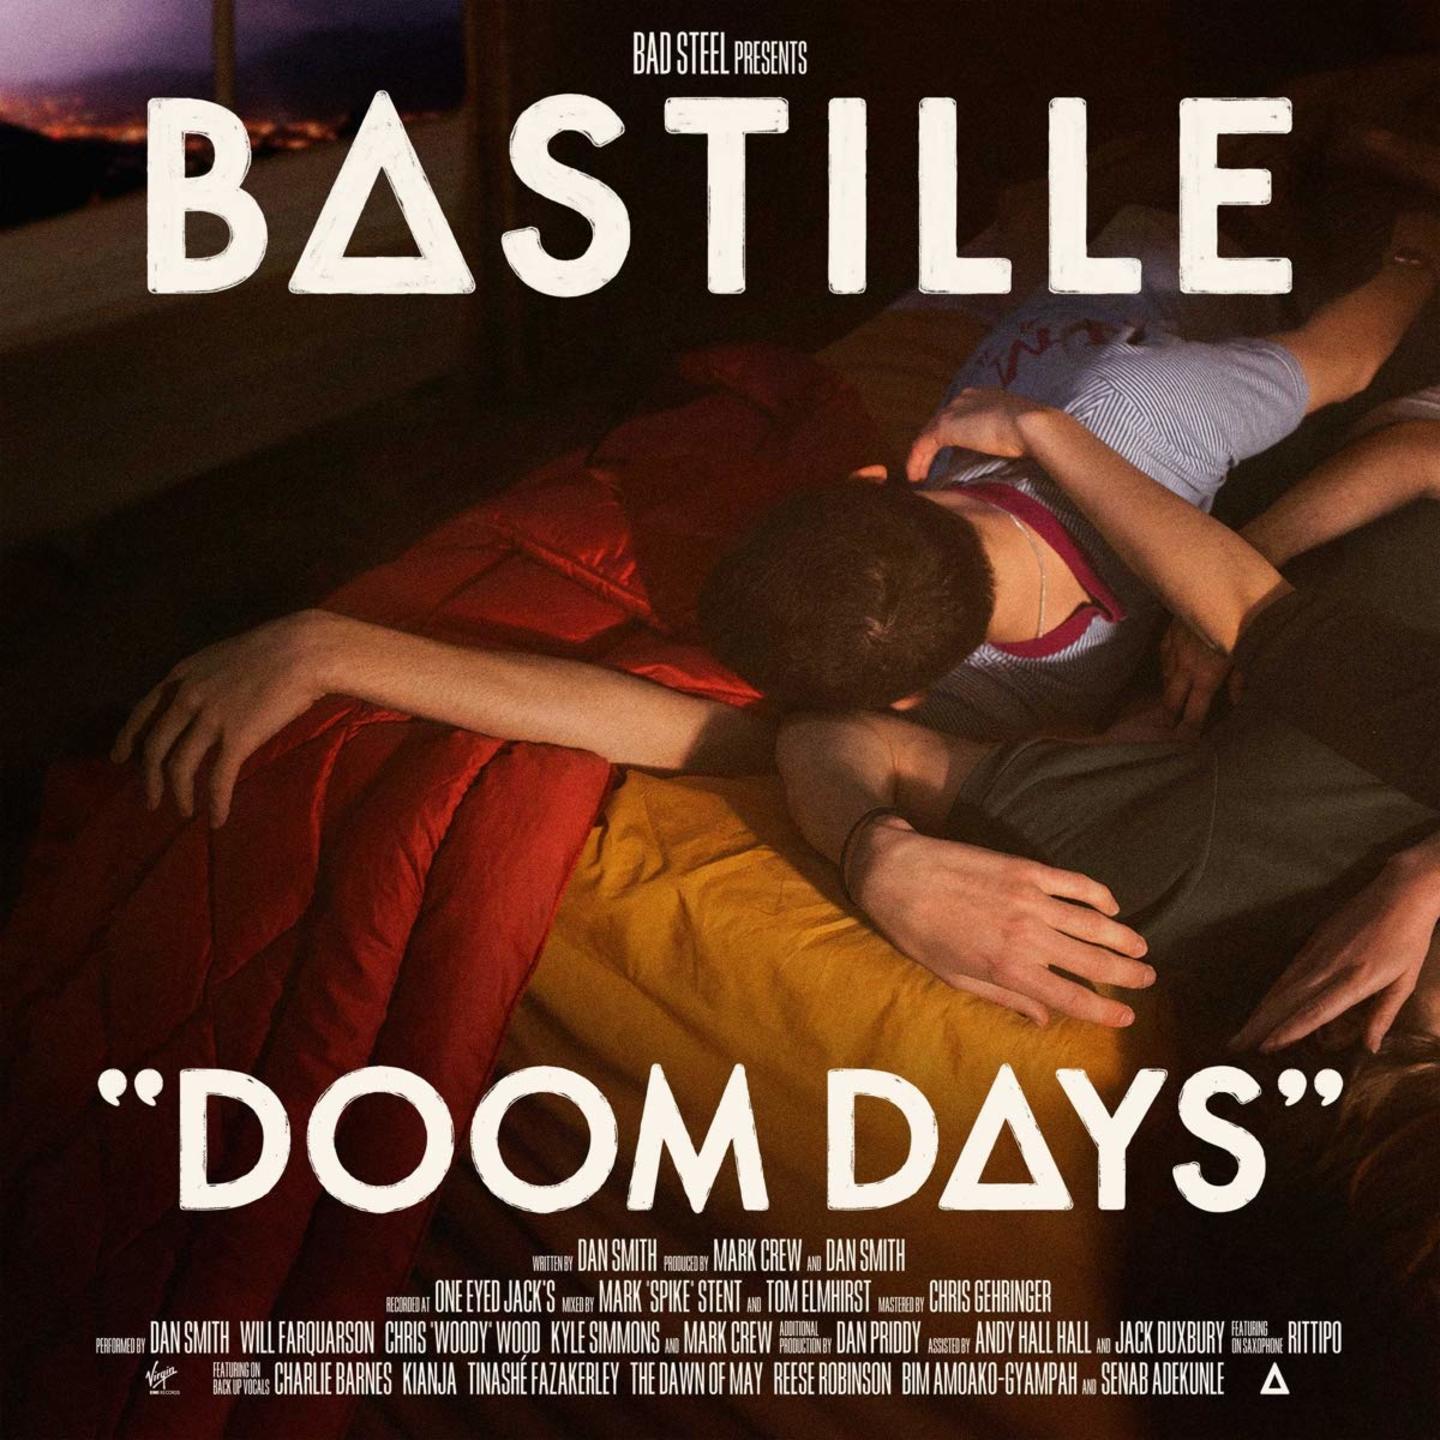 BASTILLE - Doom Days LP